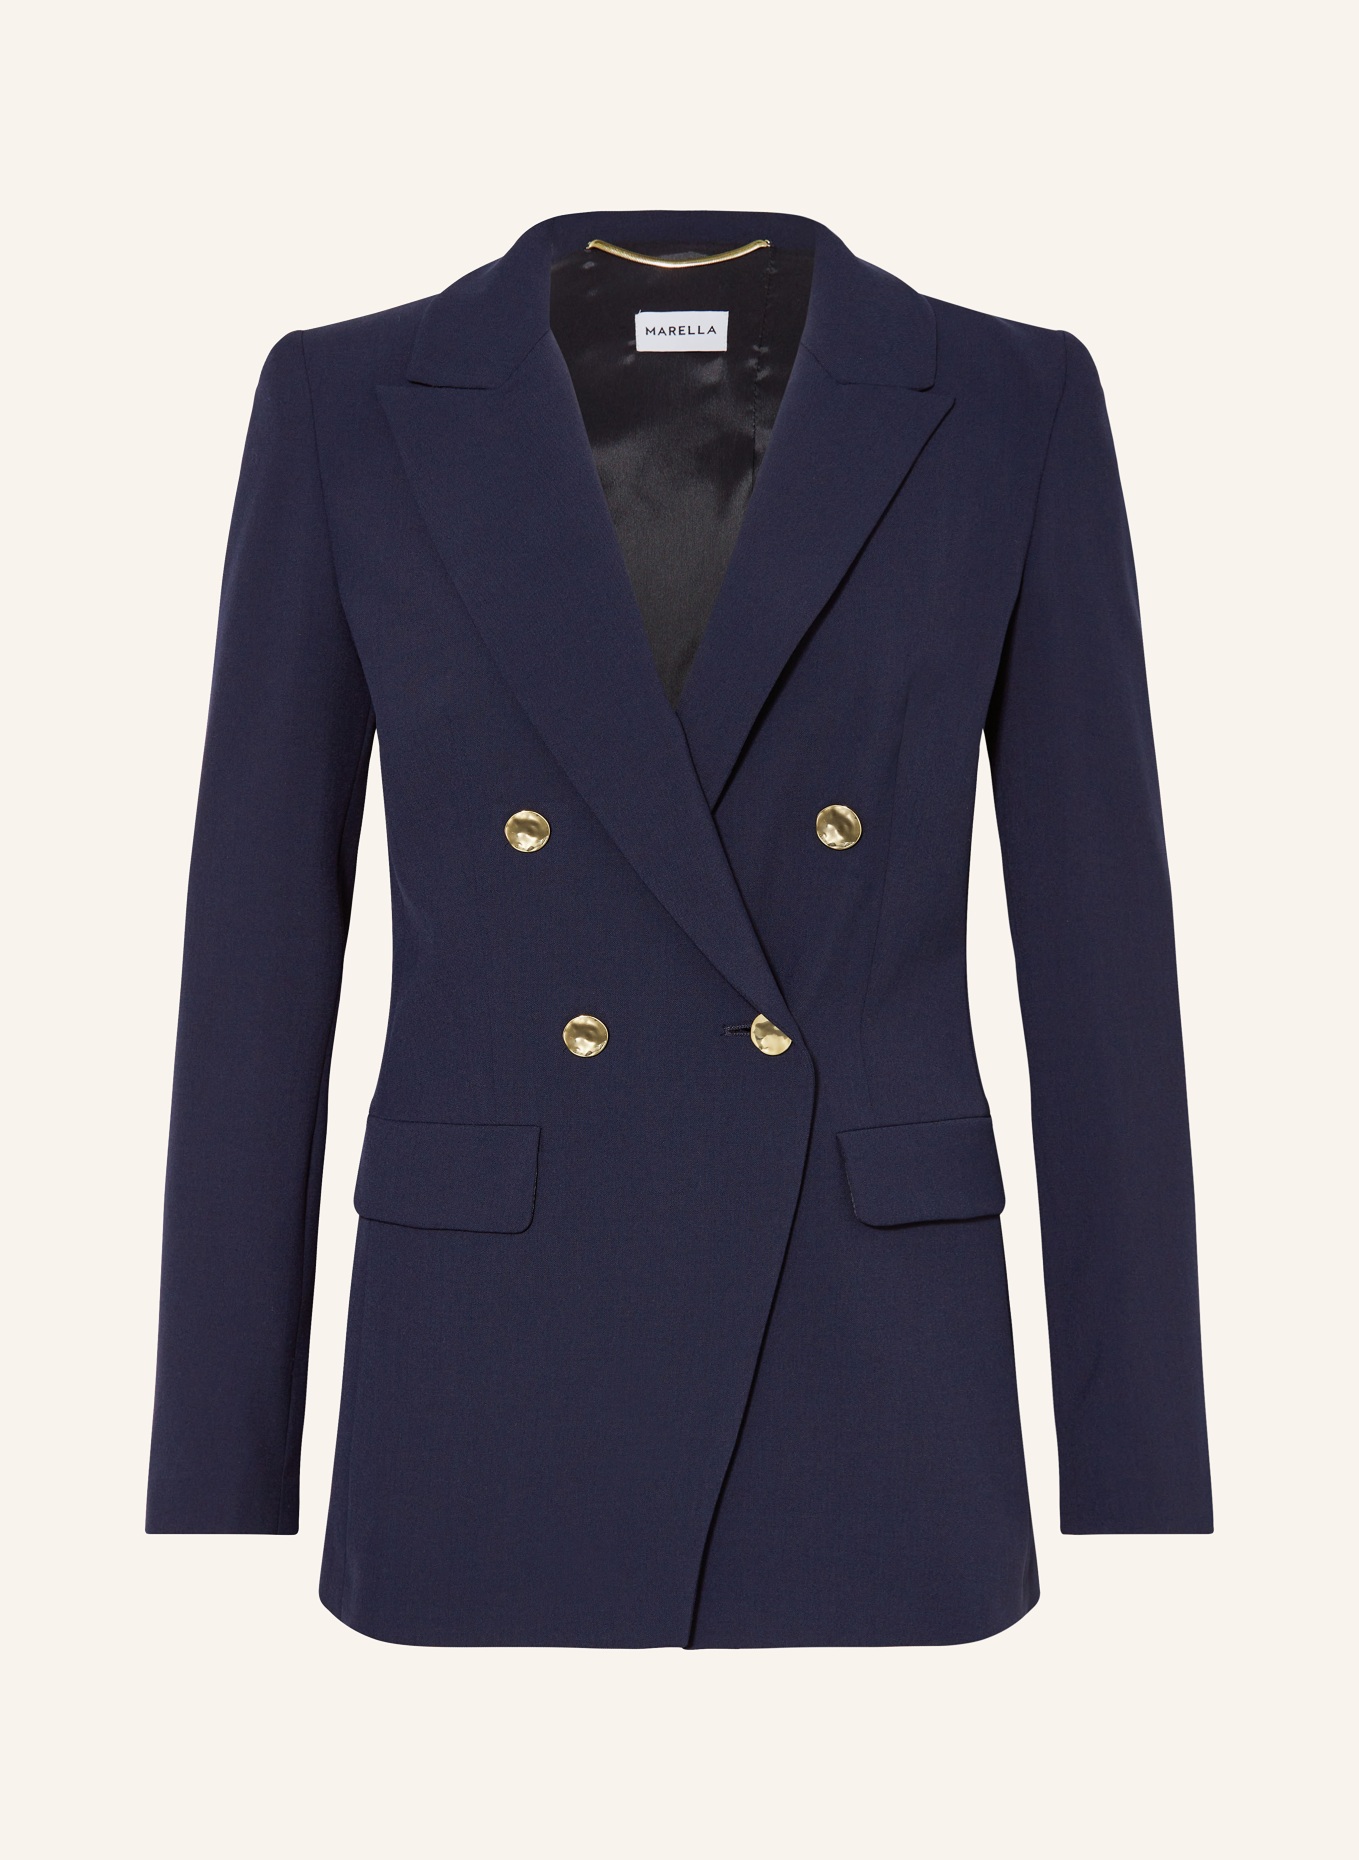 MARELLA Jersey blazer, Color: DARK BLUE (Image 1)